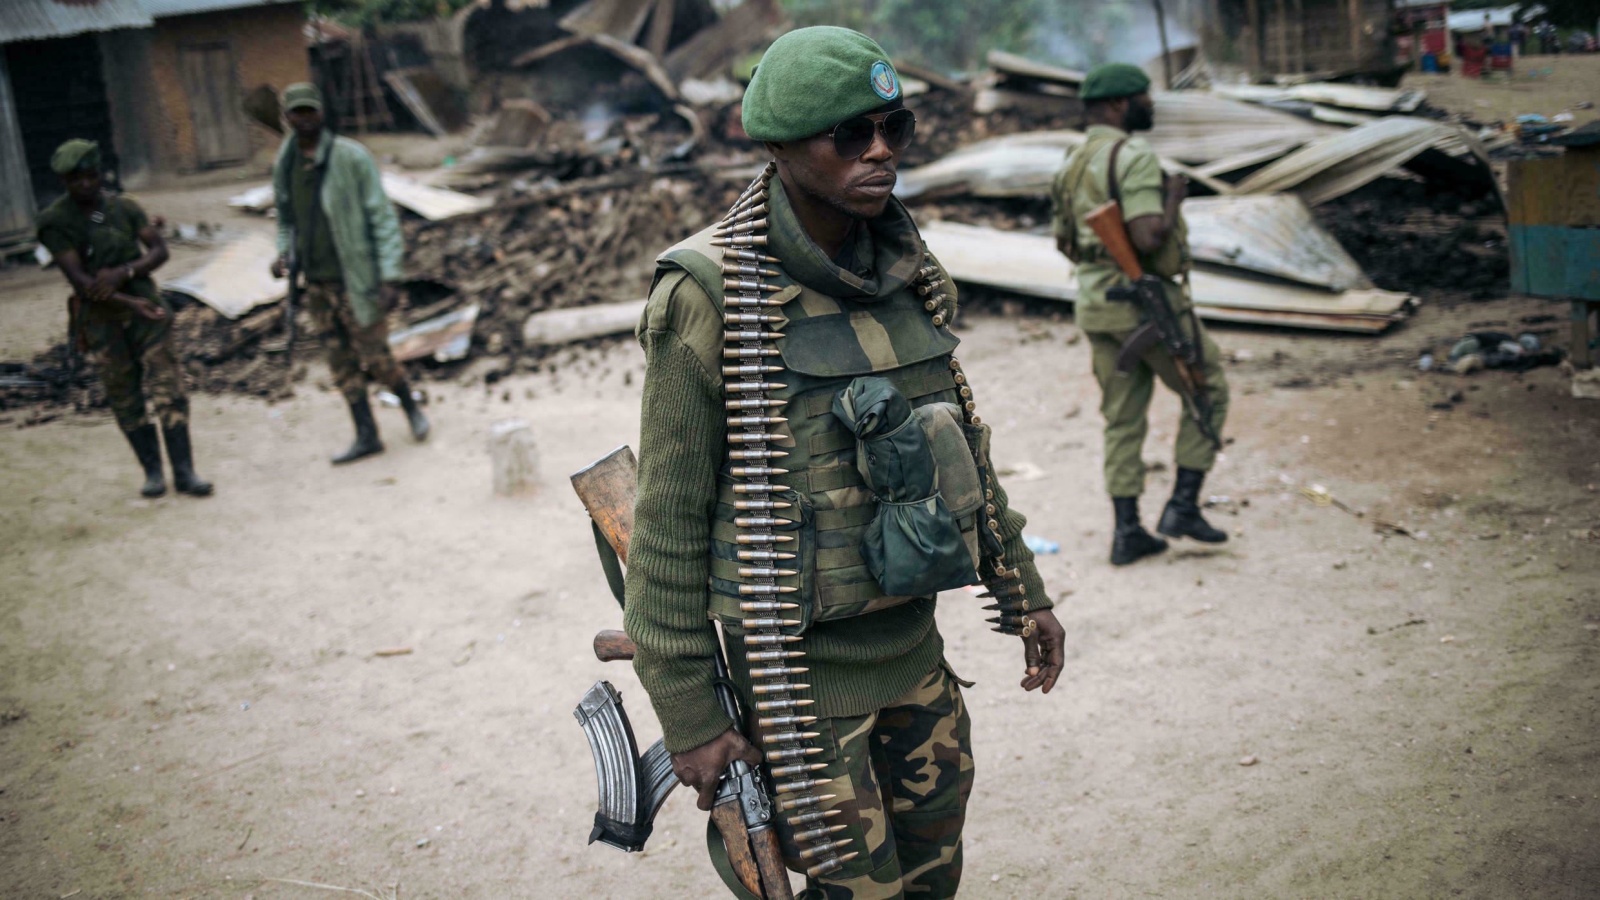 جندي من القوات المسلحة لجمهورية الكونغو الديموقراطية يشارك في دورية راجلة في قرية منزالاحو بالقرب من بيني (أرشيفية)